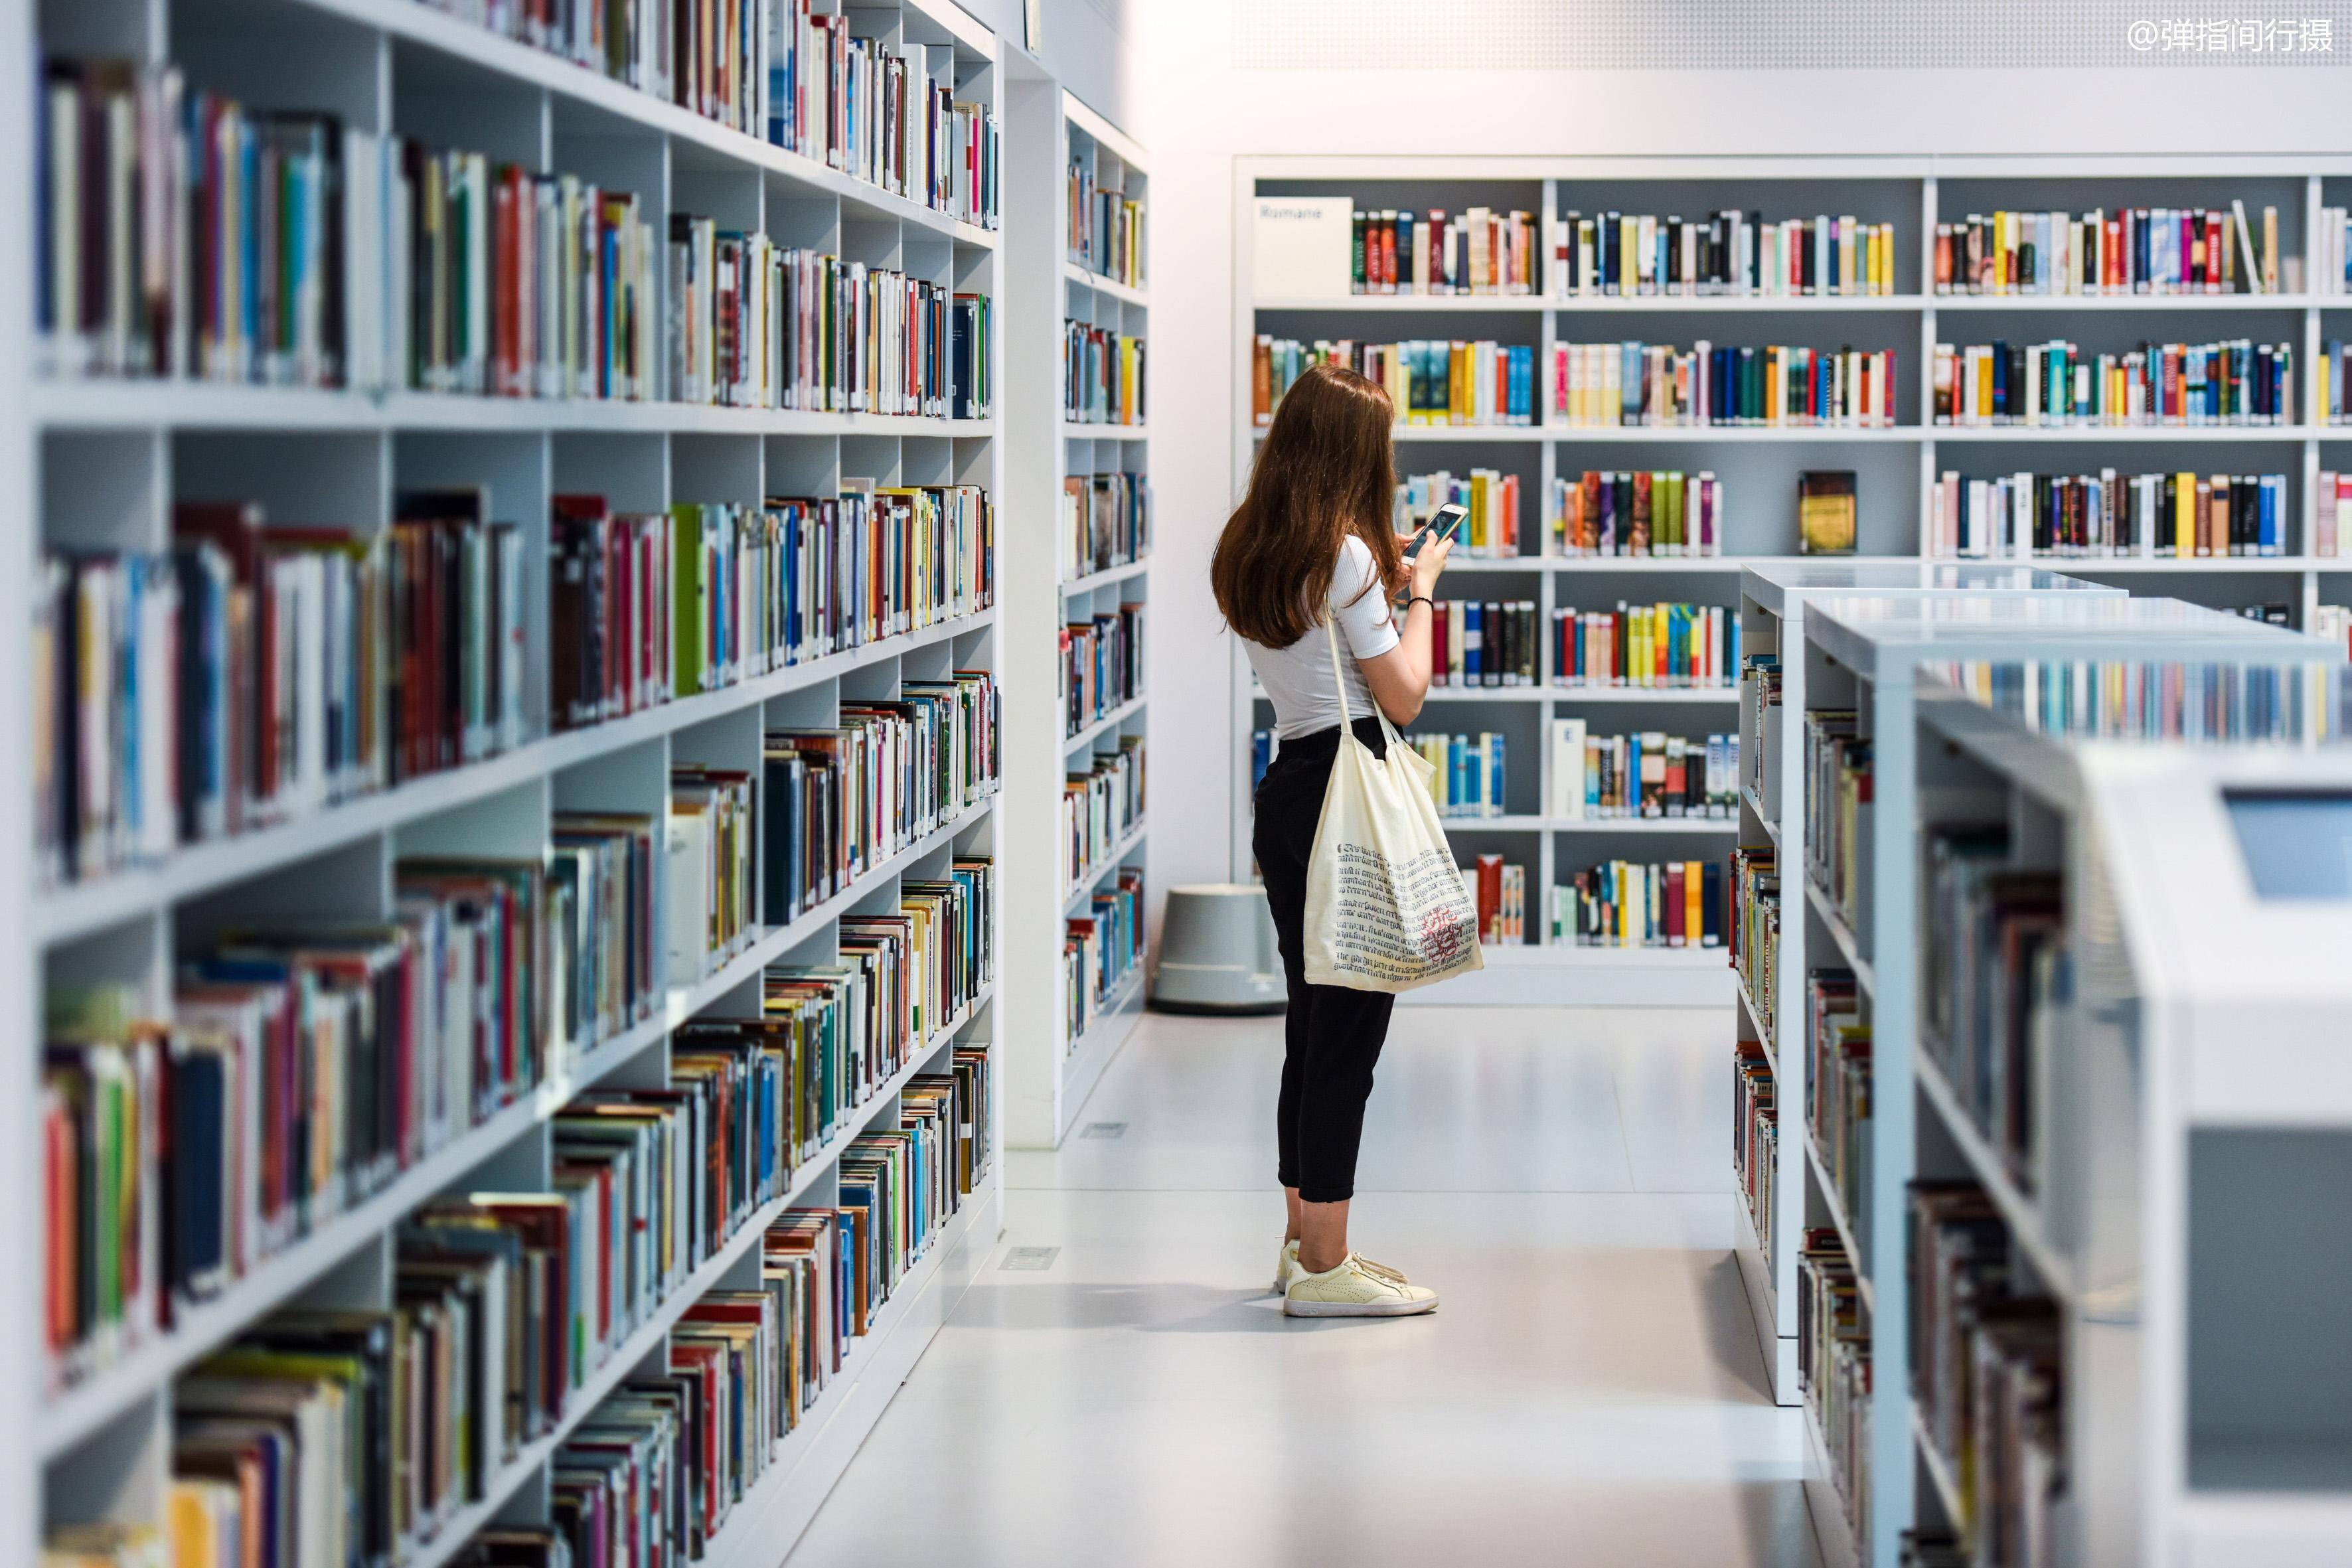 耗资79亿欧元打造的德国最美图书馆,成为年轻人谈情说爱的主战场